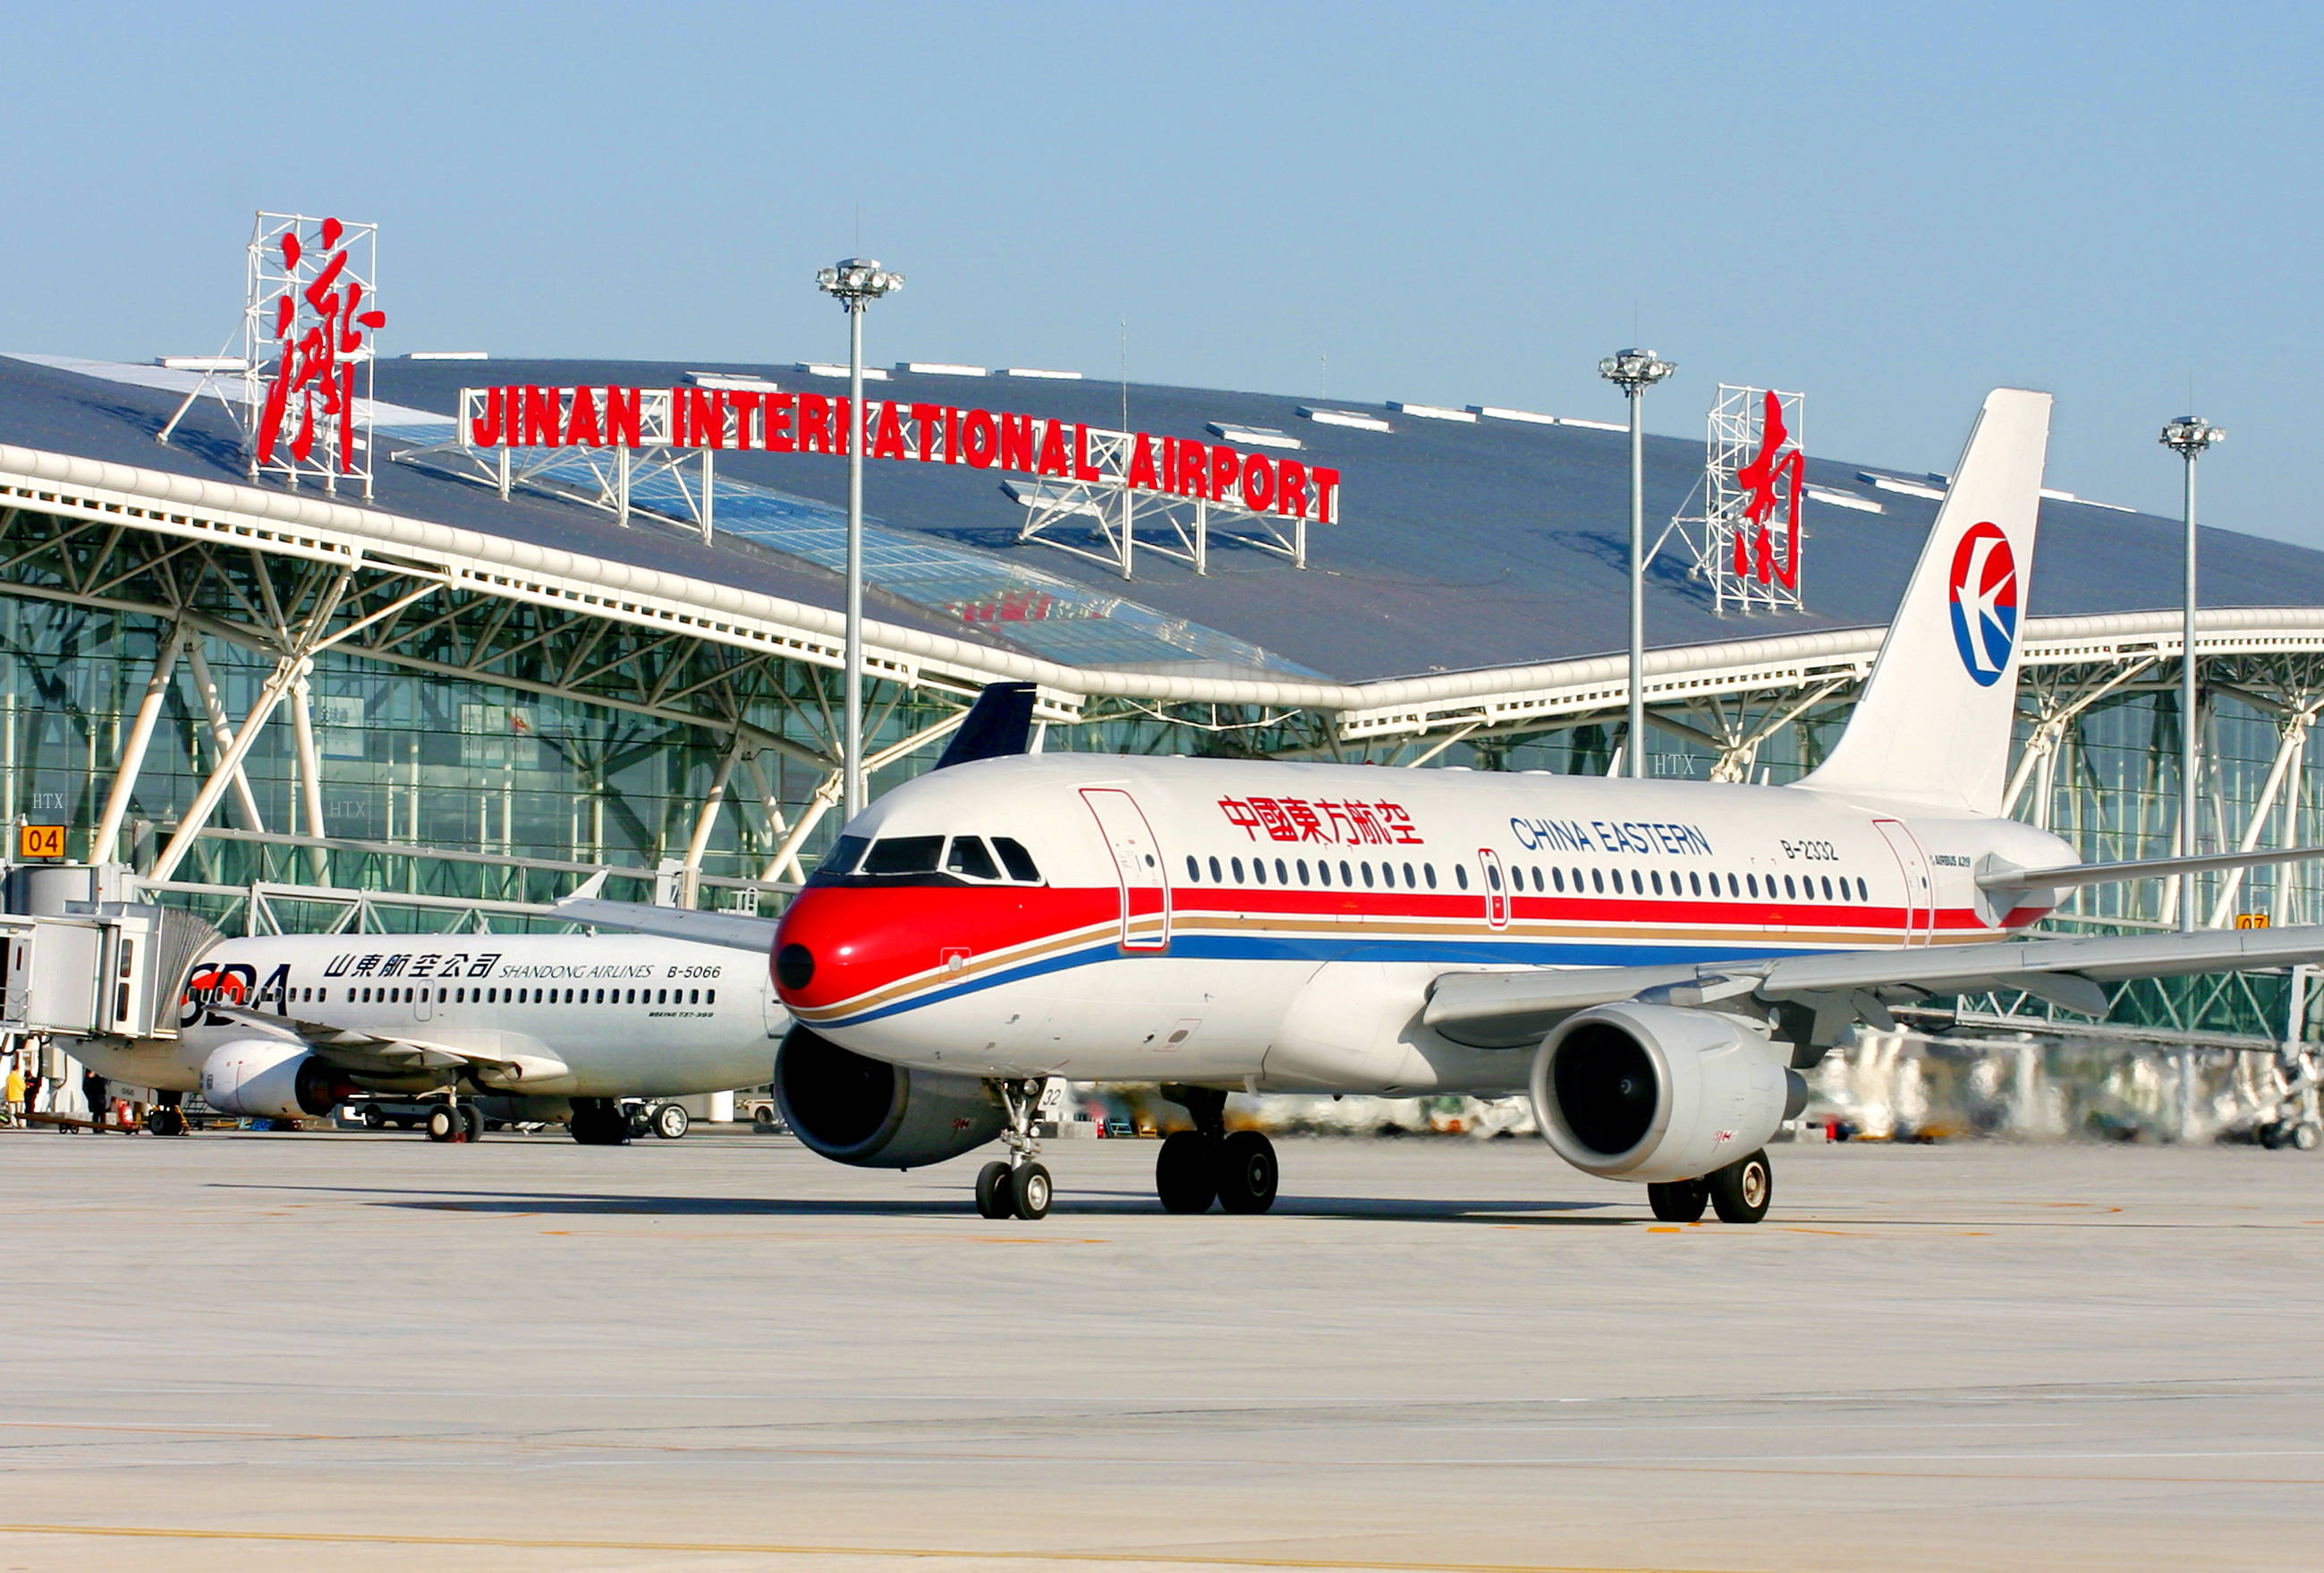 端午小长假济南机场预计进出港旅客11万人次,机票充足价格较低